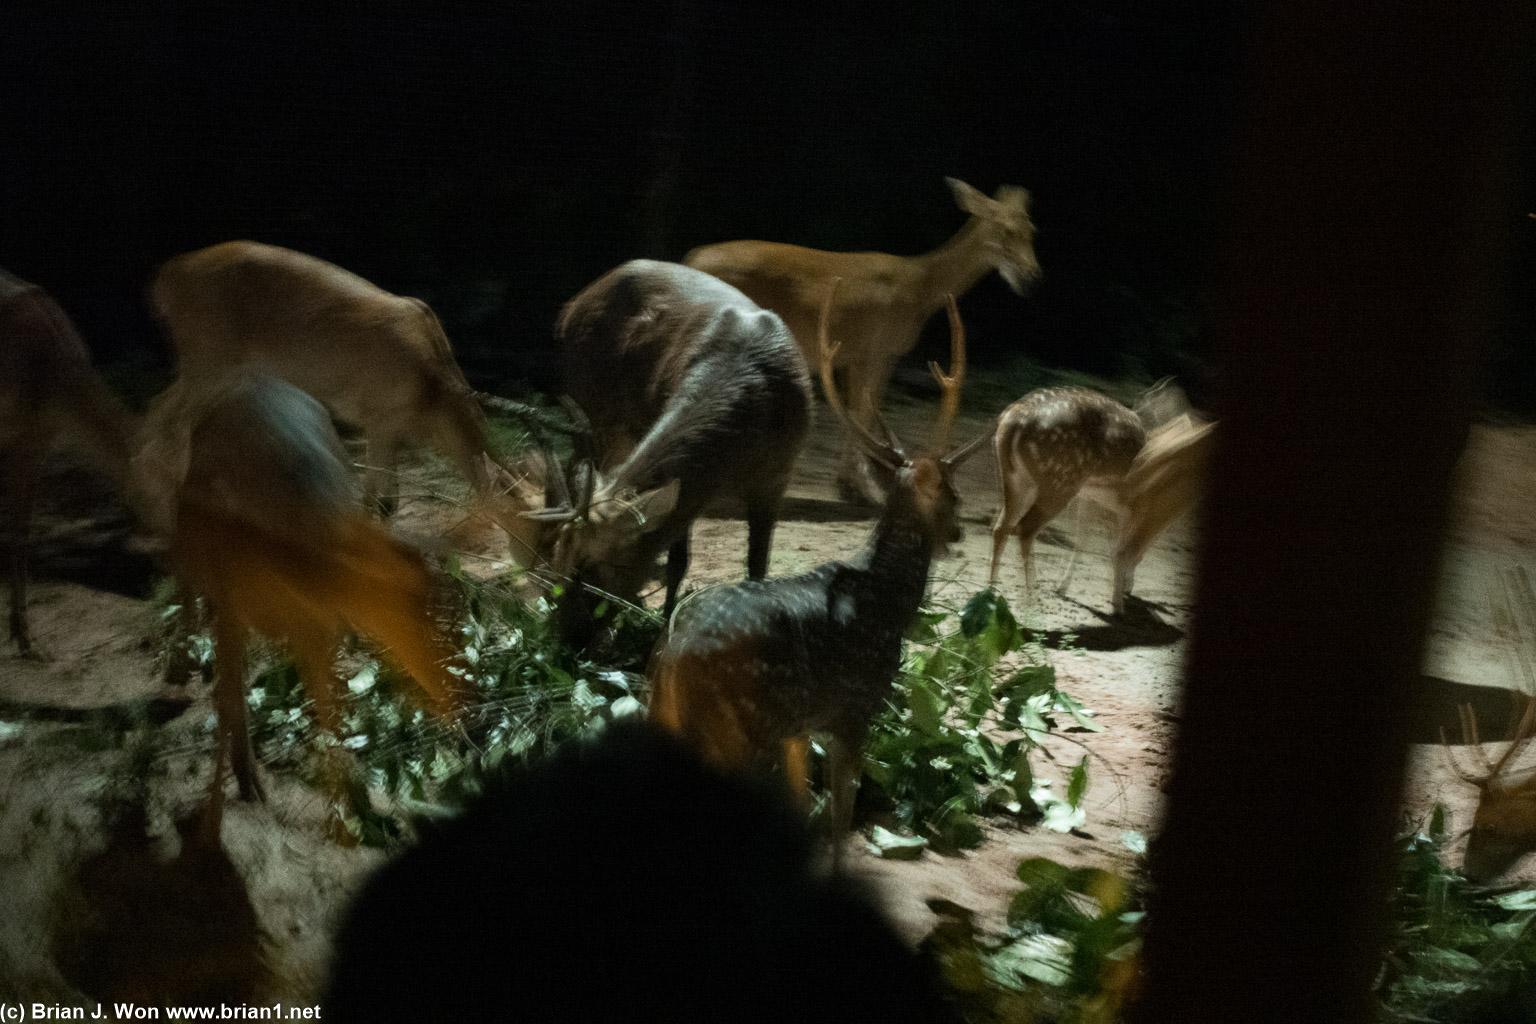 Night safari at Mandai Wildlife Reserve.